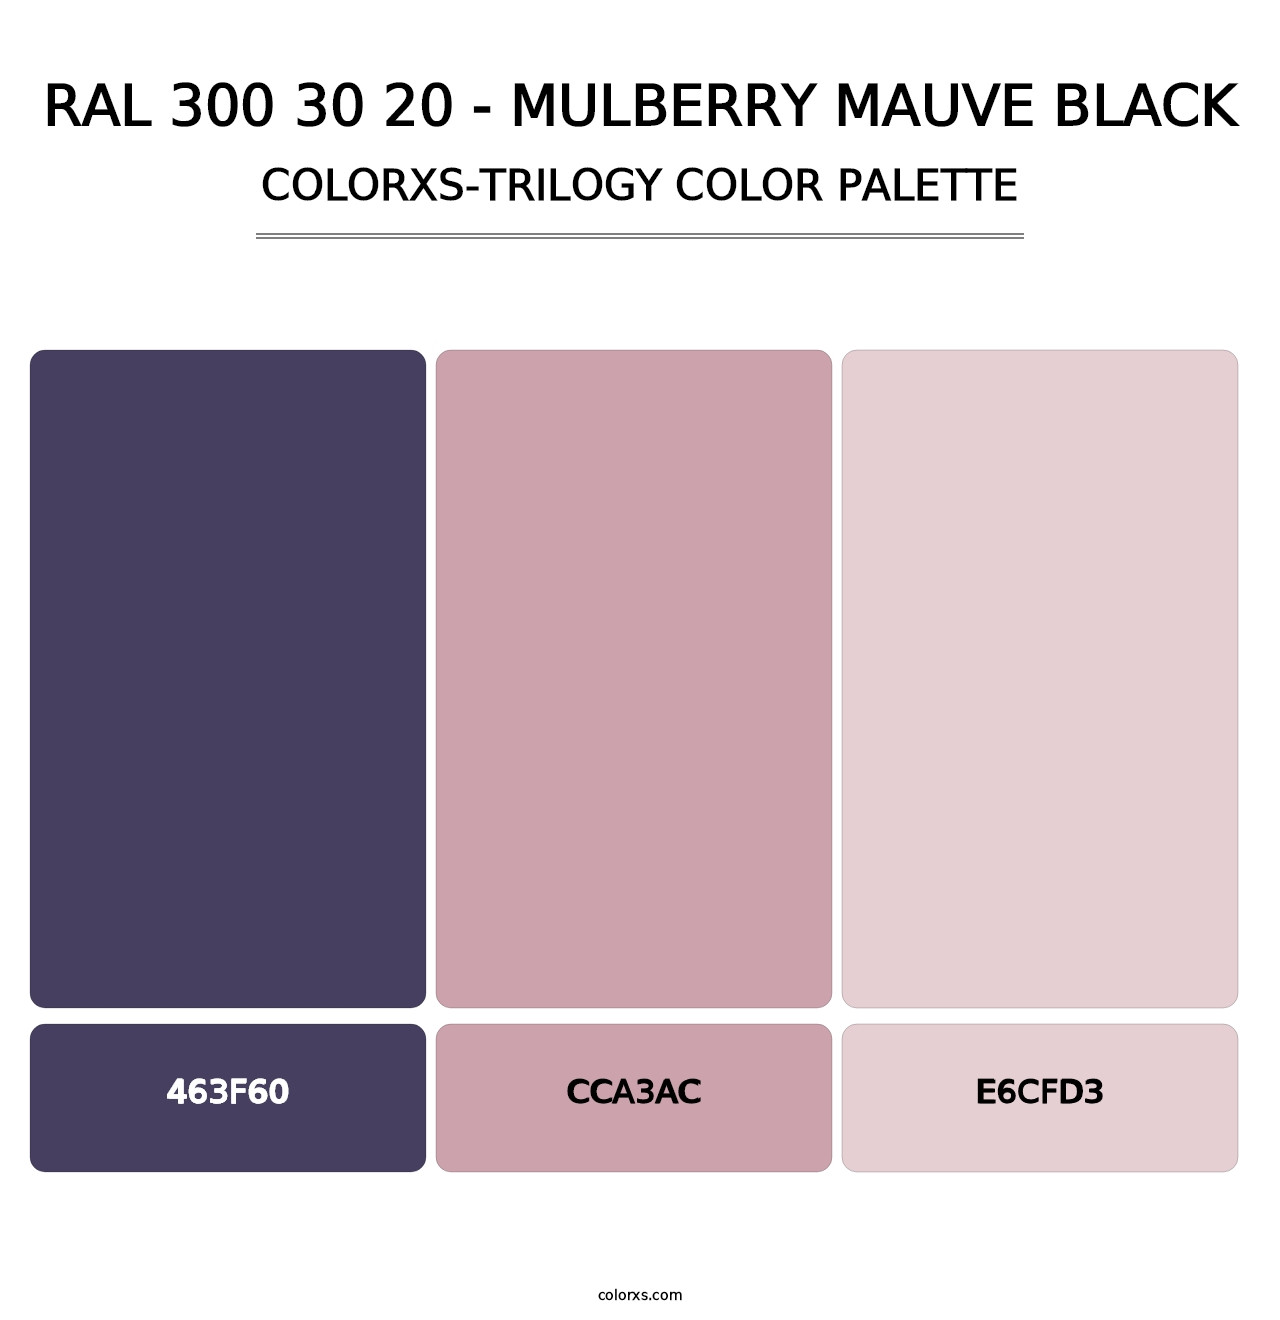 RAL 300 30 20 - Mulberry Mauve Black - Colorxs Trilogy Palette